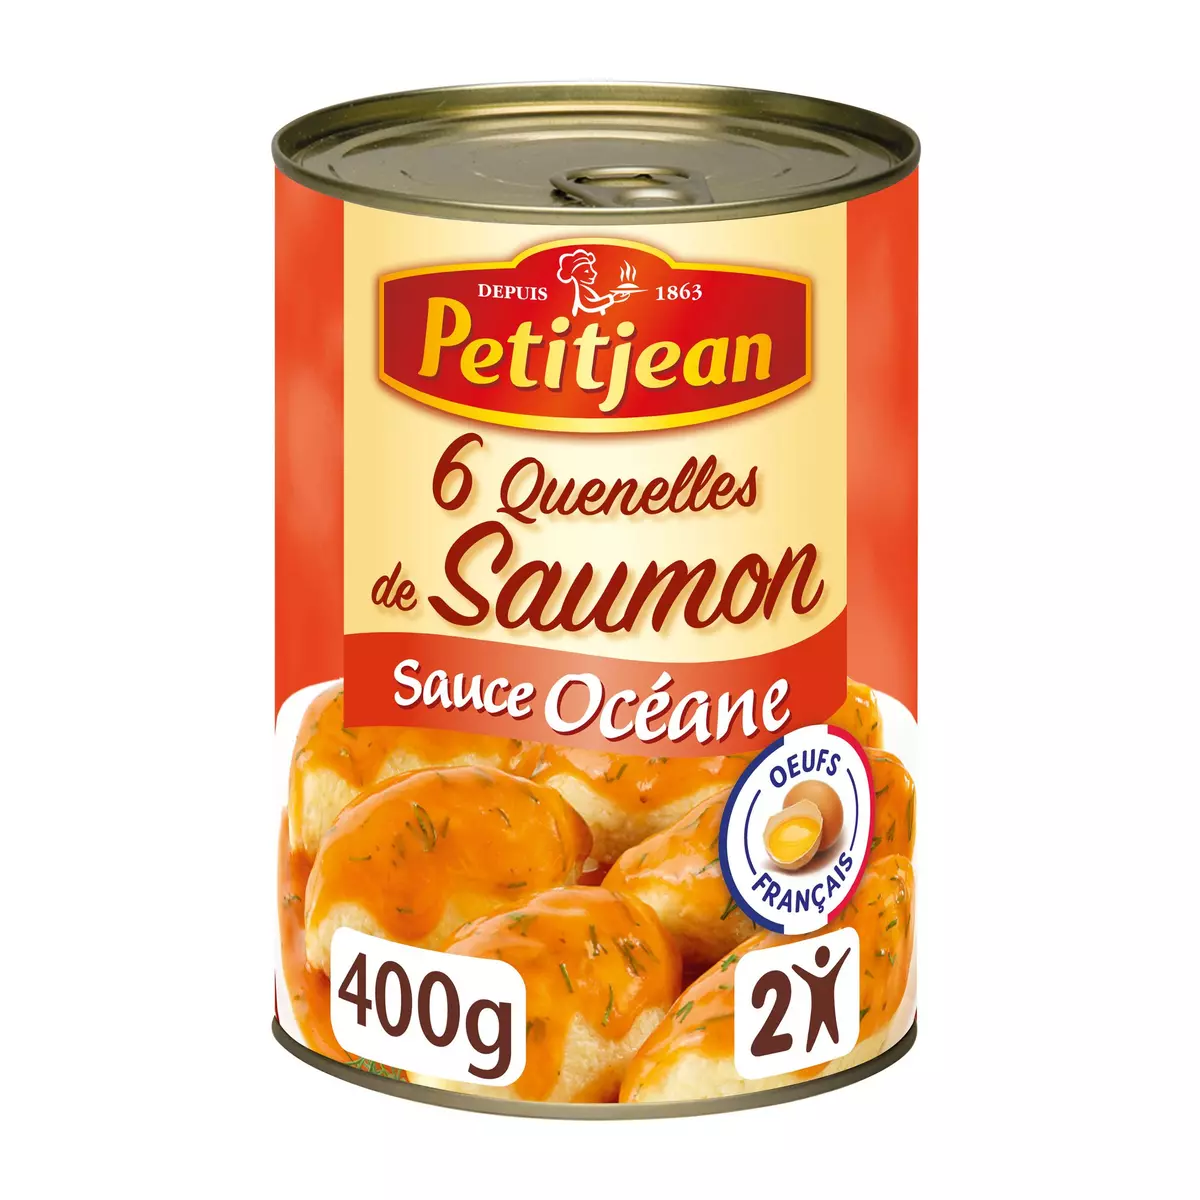 PETIT JEAN Quenelles saumon sauce océane 6 pièces 400g